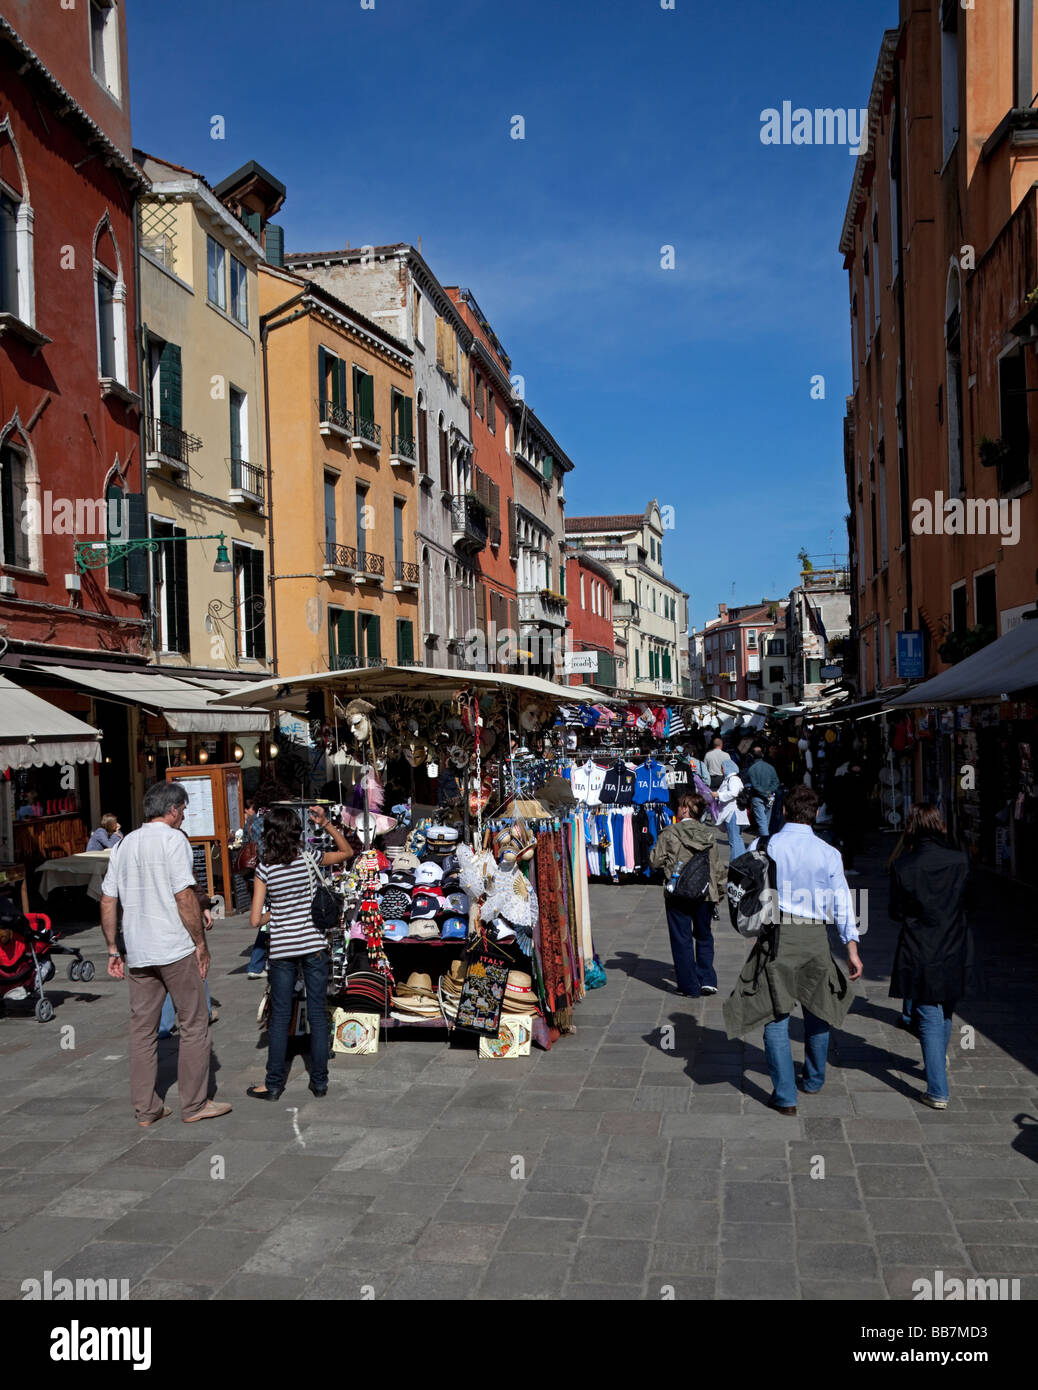 En la calle comercial de calado, Venecia, Italia Foto de stock